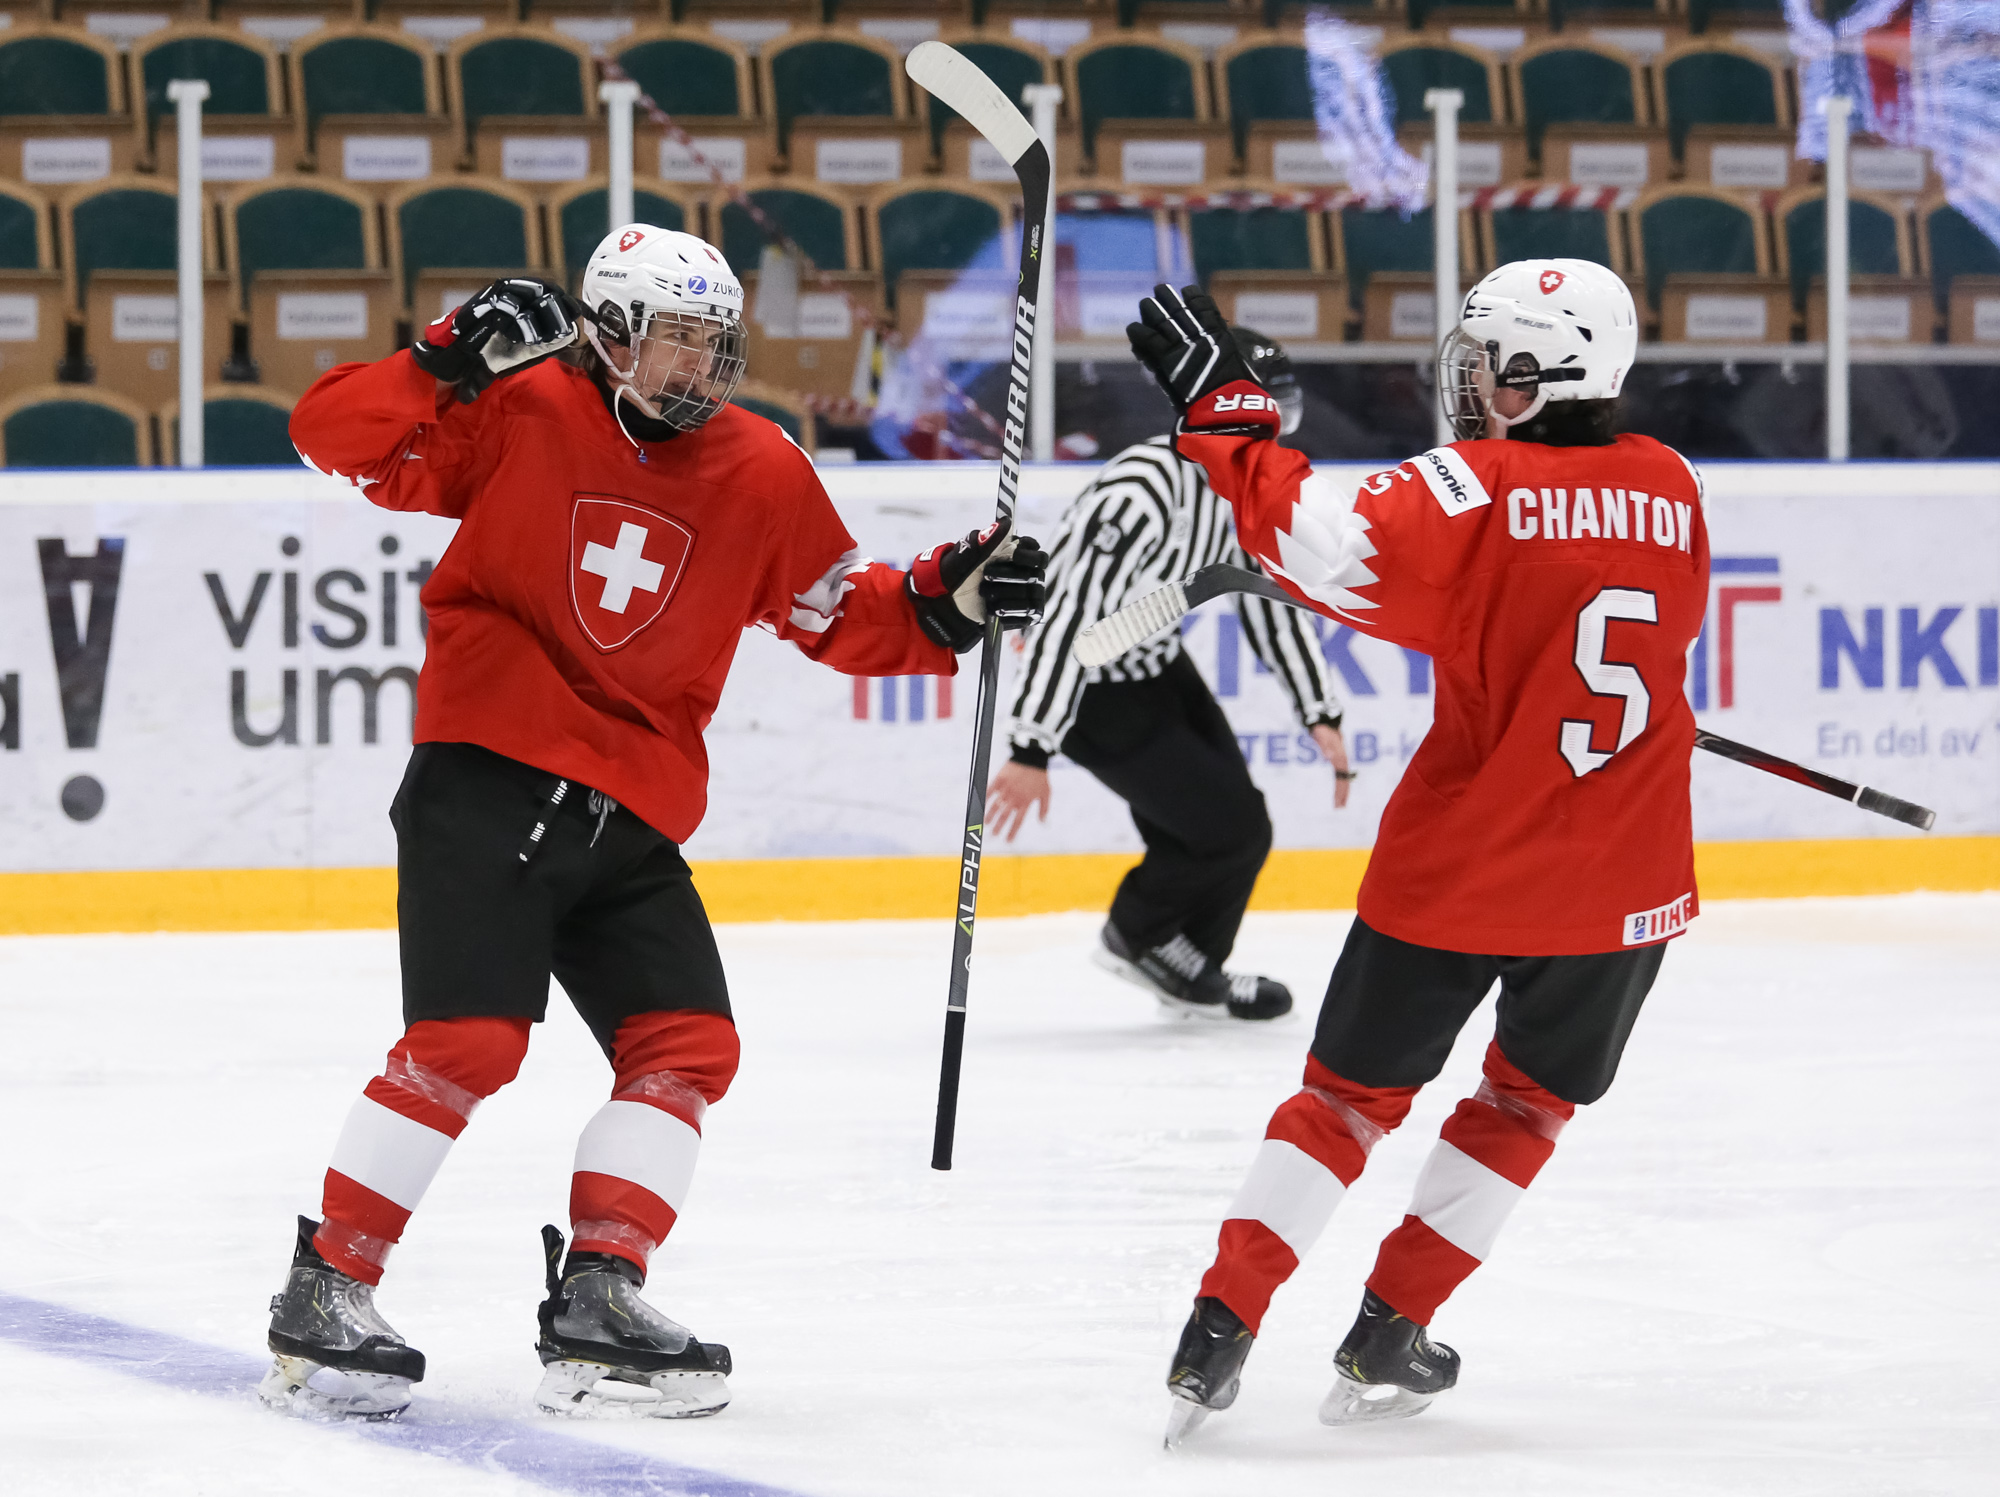 IIHF - Czech power play downs Swiss